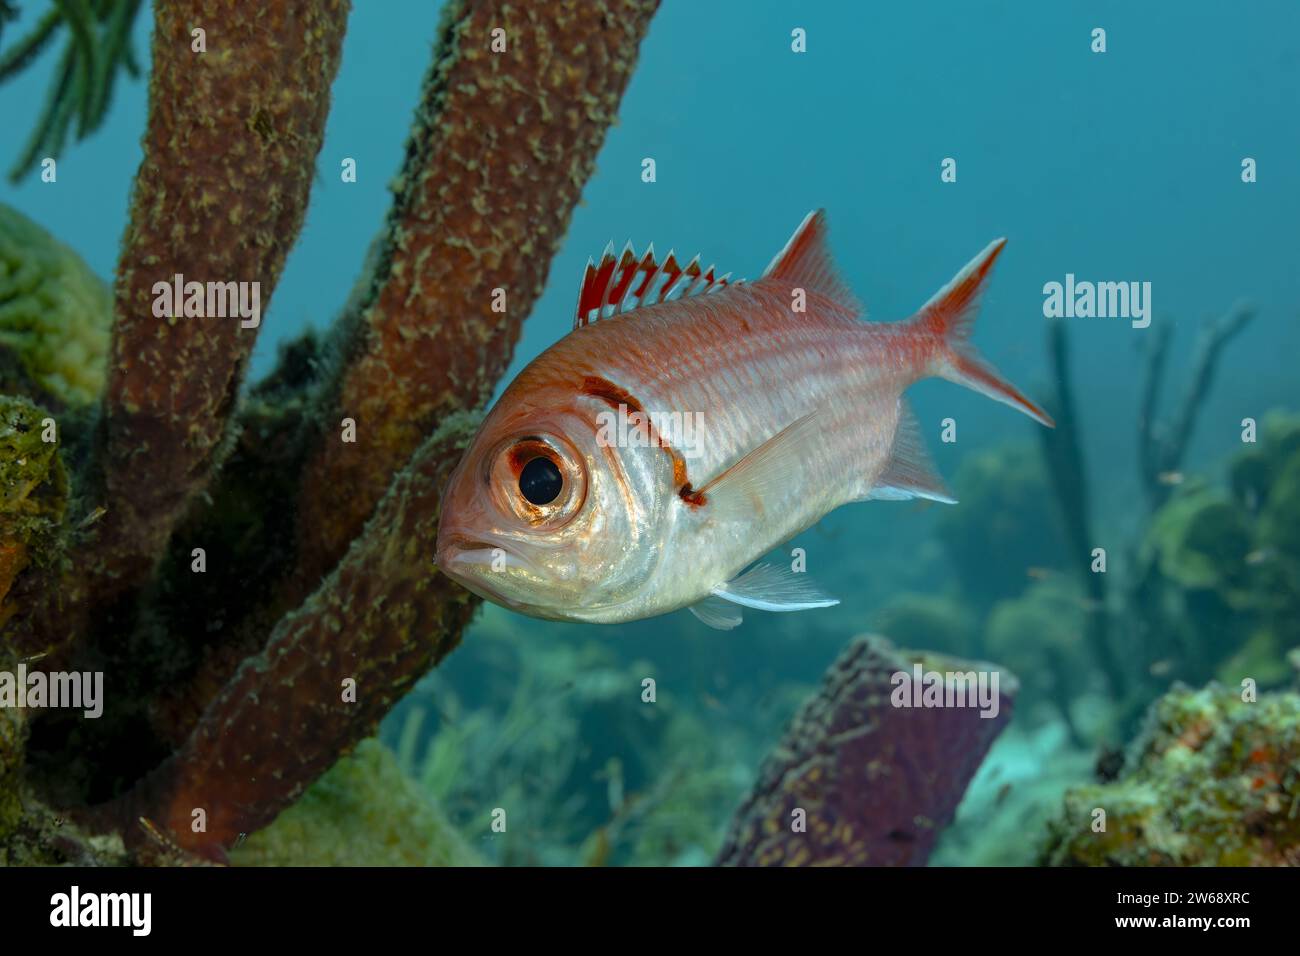 Ein einziger tropischer Fisch gleitet zwischen Korallenformationen in einer ruhigen Unterwasserumgebung und zeigt lebendige Meereslebewesen. Stockfoto